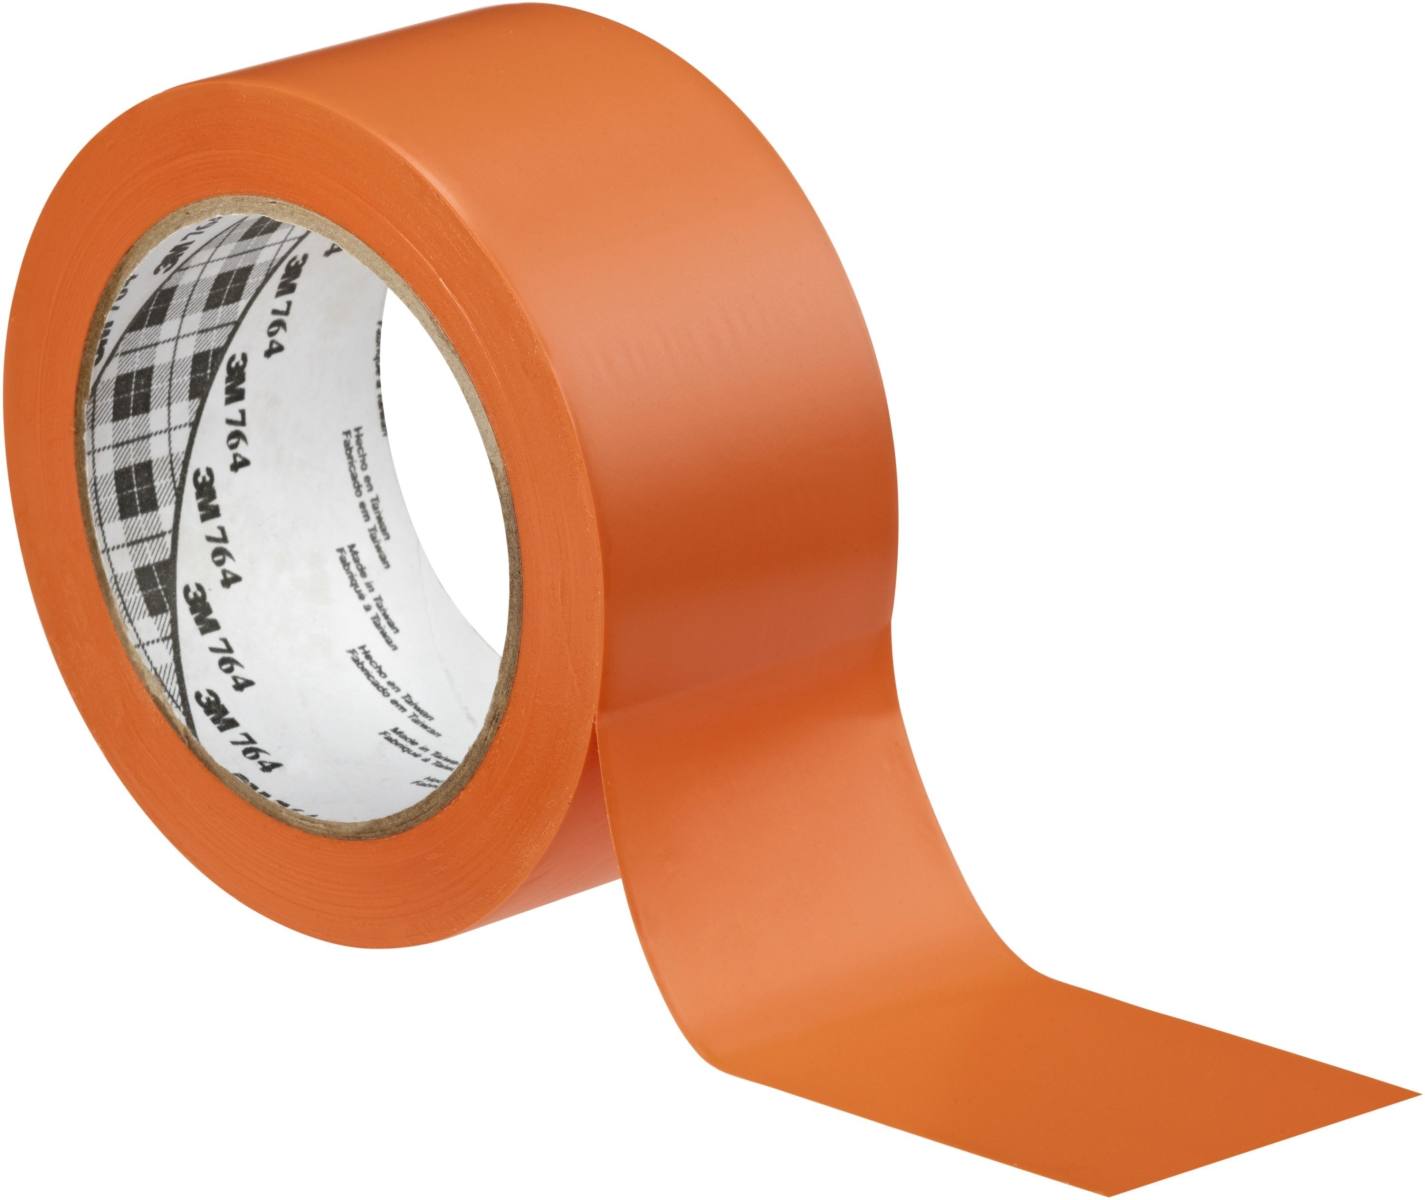 3M PVC kleefband voor alle doeleinden 764, oranje, 50 mm x 33 m, individueel verpakt voor gebruiksgemak